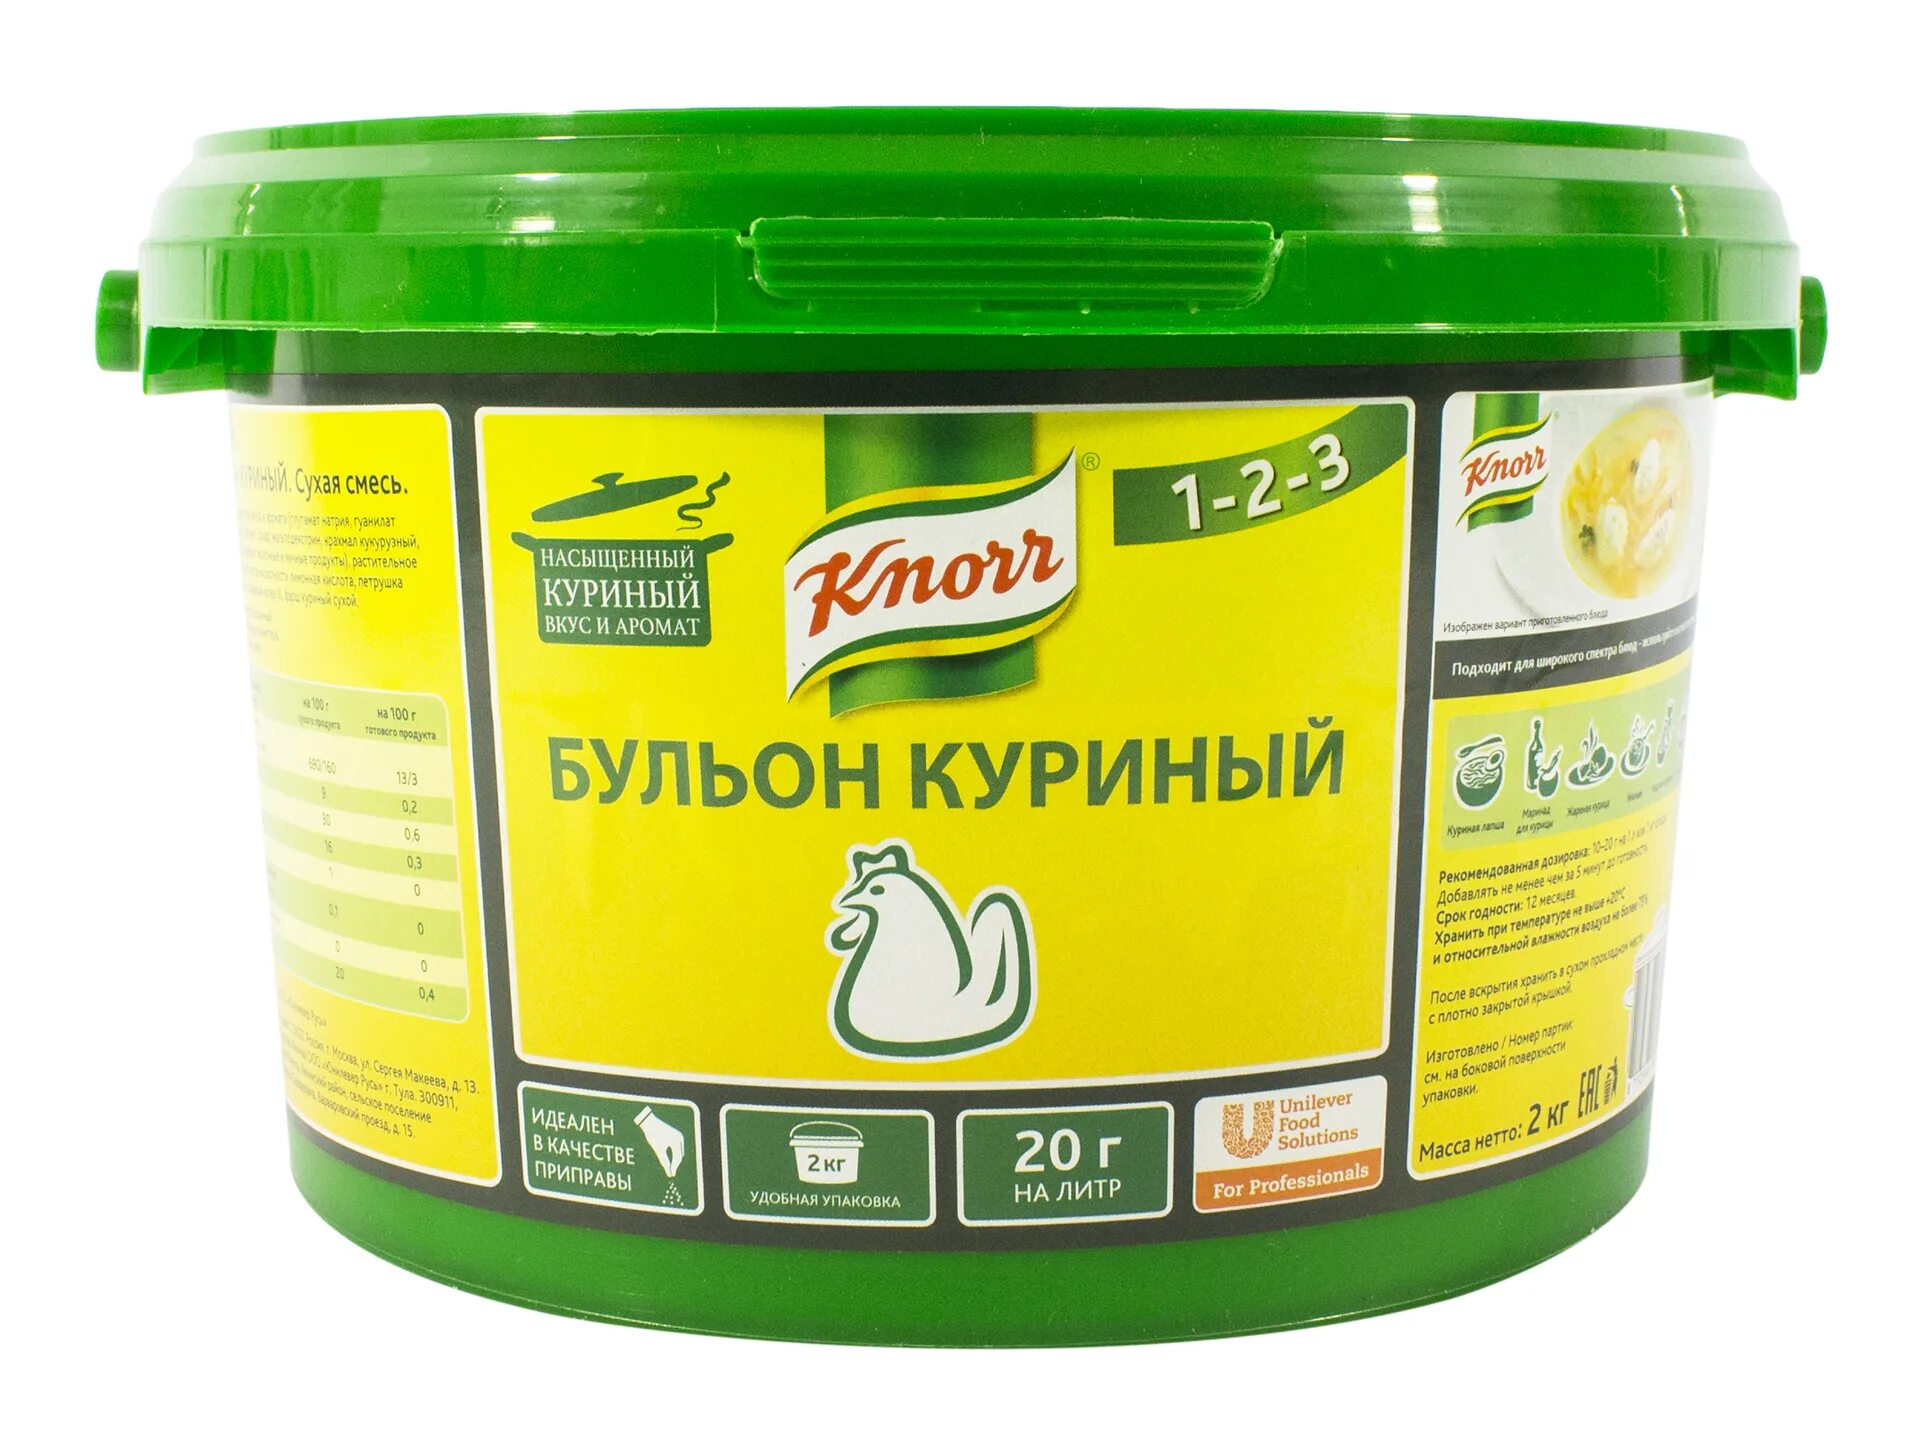 Бульон куриный, 2кг, Knorr, Россия. Бульон сухой Кнорр 2кг. Бульон грибной Knorr 2 кг. Knorr бульон куриный, 2 кг.